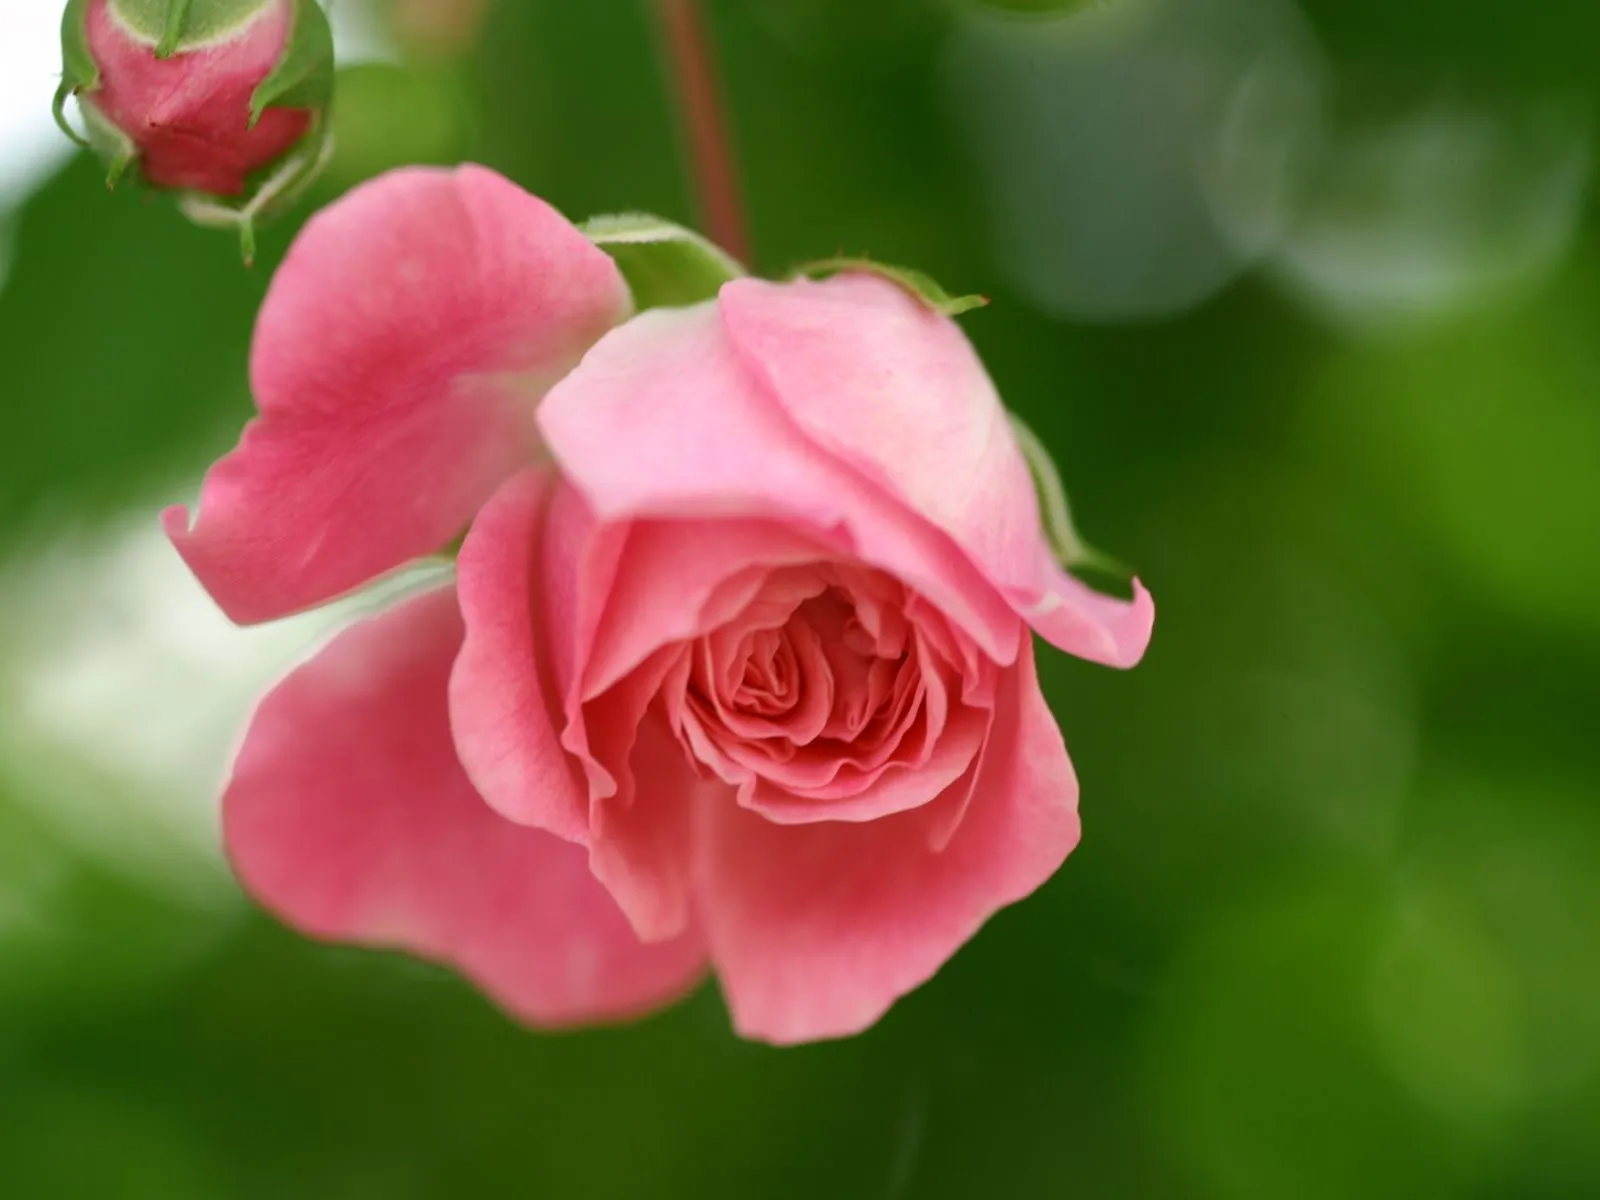 Fotos de rosas rosada ~ Mejores Fotos del Mundo | Fotografías de ...